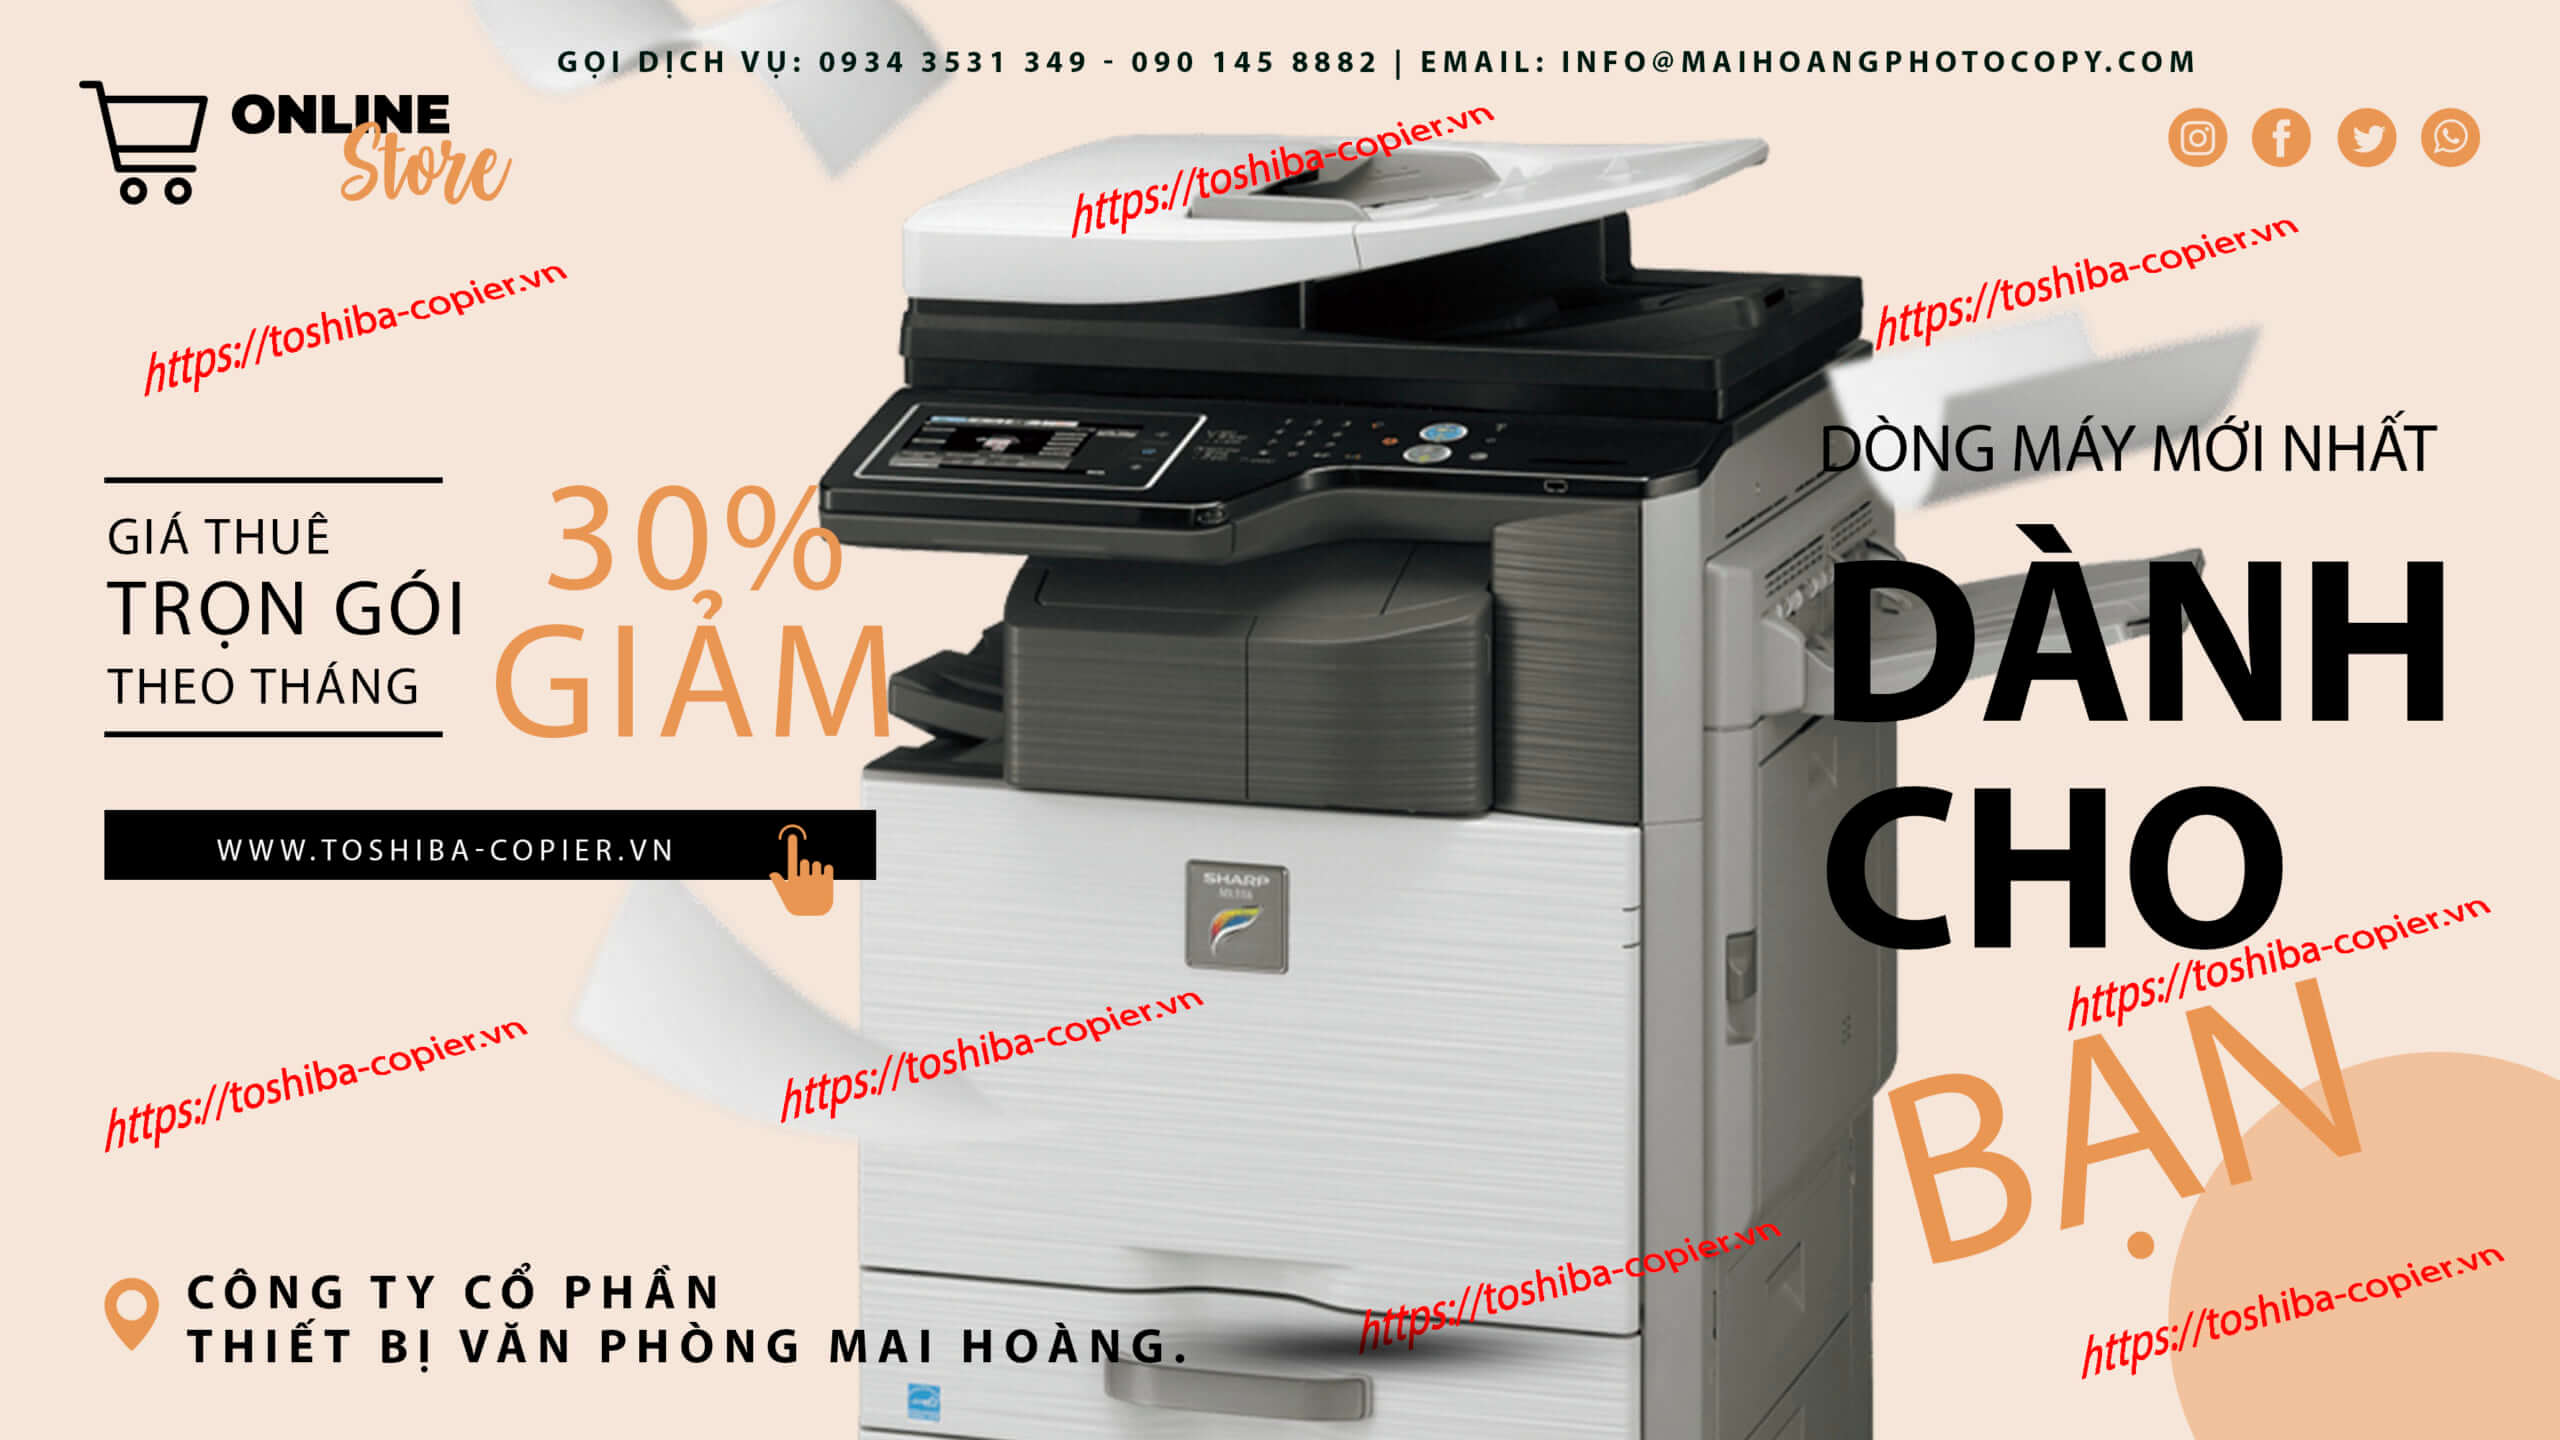 cho thuê máy photocopy sharp Tại sao bạn nên mua máy photocopy Sharp? Đây là những lý do